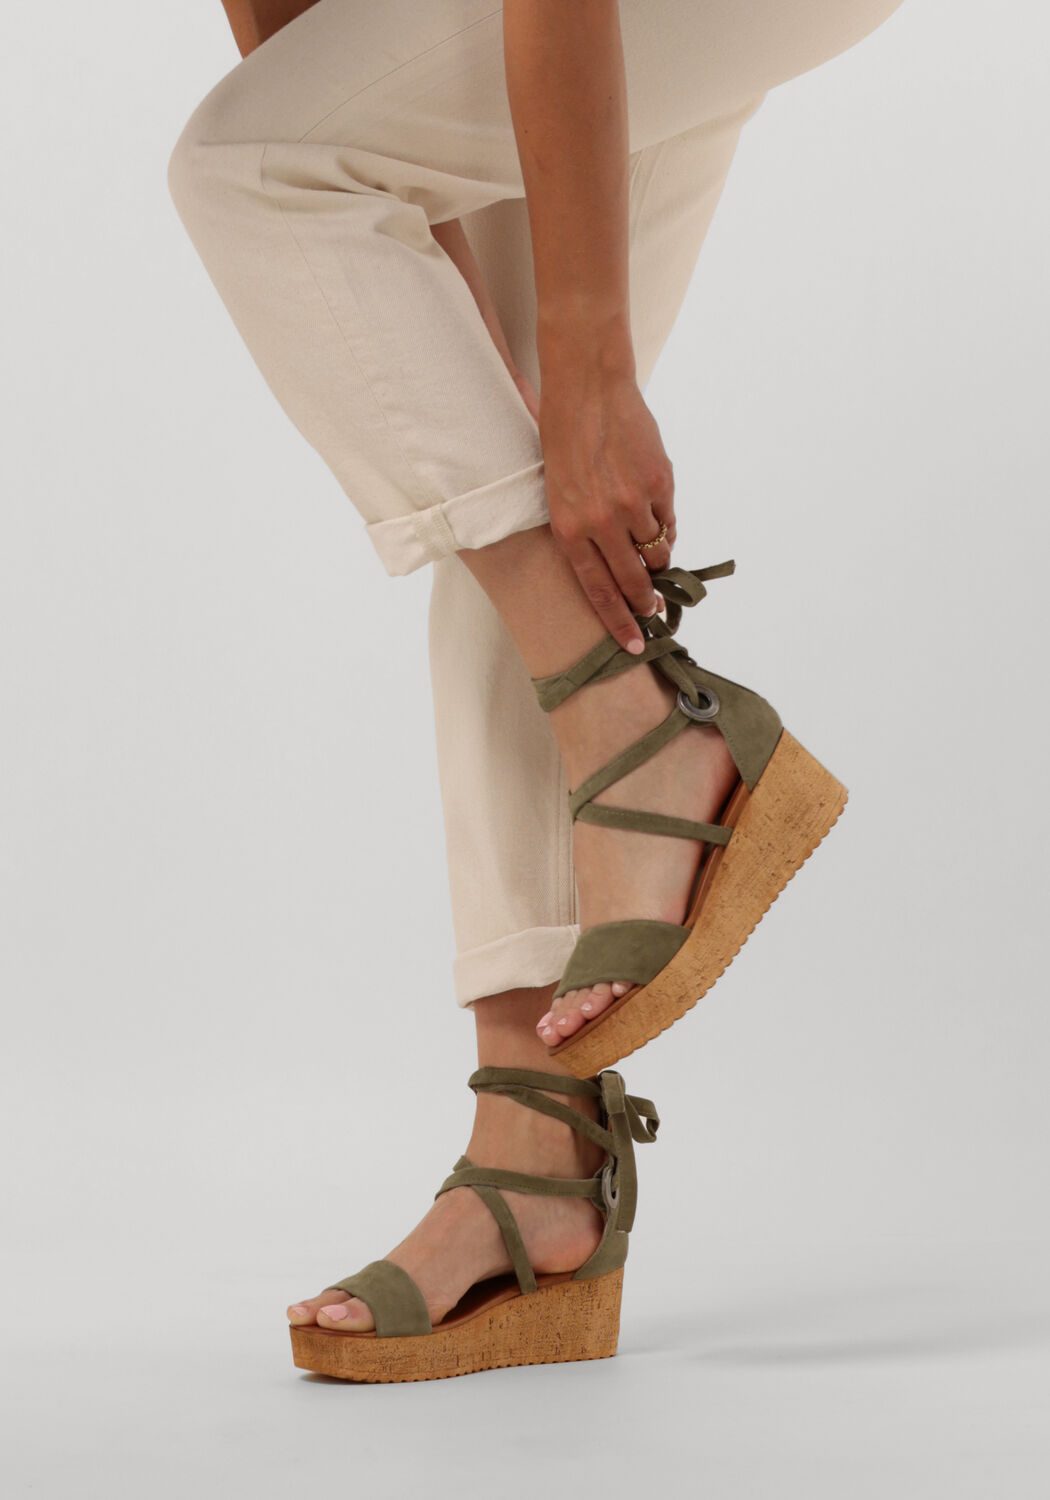 open tenen sandalen natuurlijke lente lederen sandalen zomer sandalen Schoenen damesschoenen Sandalen Marokkaanse sandalen vrouwen sandalen traditionele flipflop Arabische sandalen 